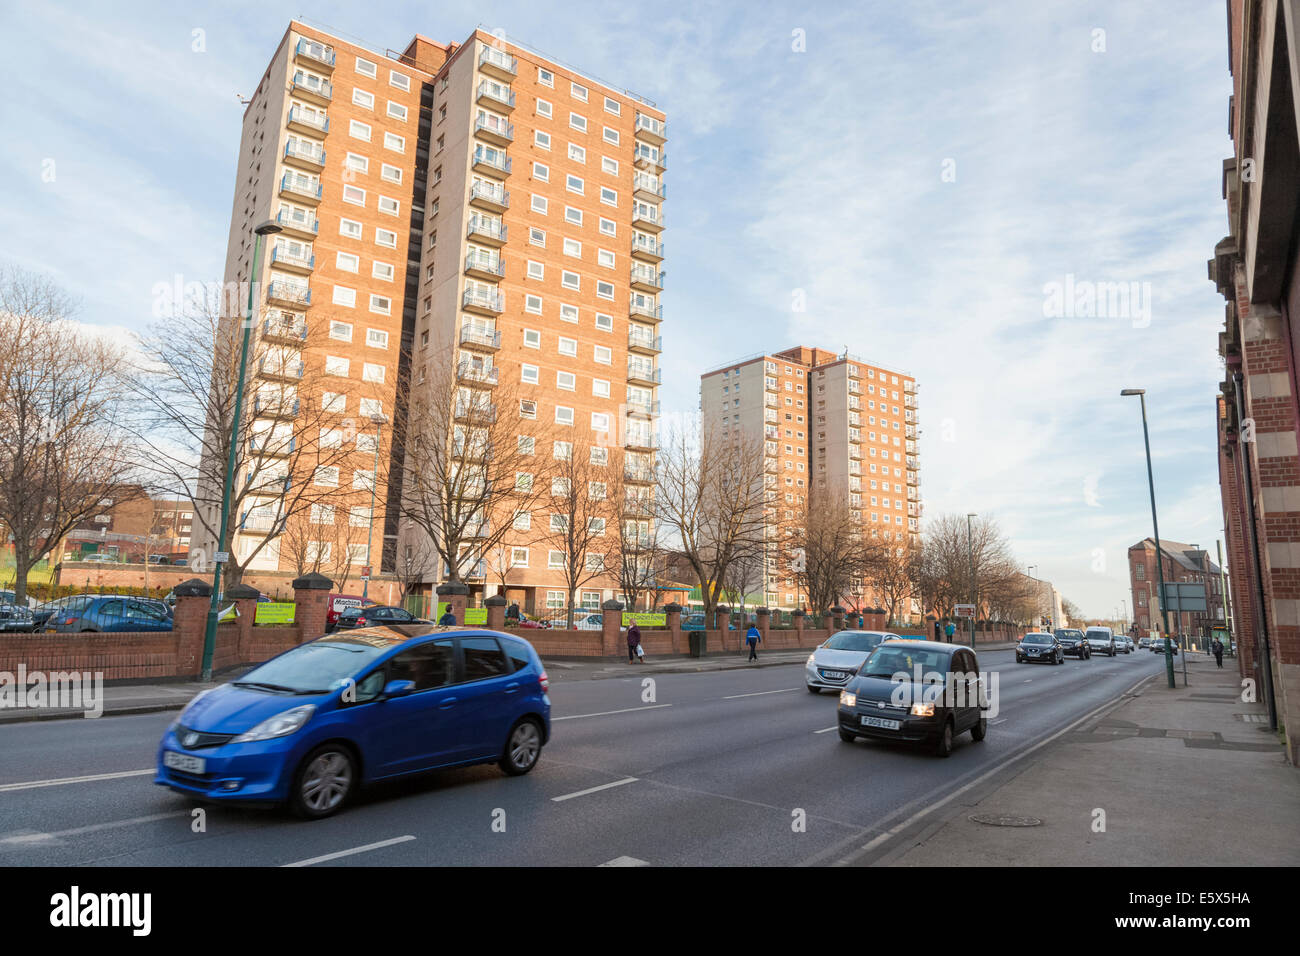 Elevato aumento di blocchi di appartamenti con il traffico della città su una strada sottostante, Nottingham, Inghilterra, Regno Unito Foto Stock